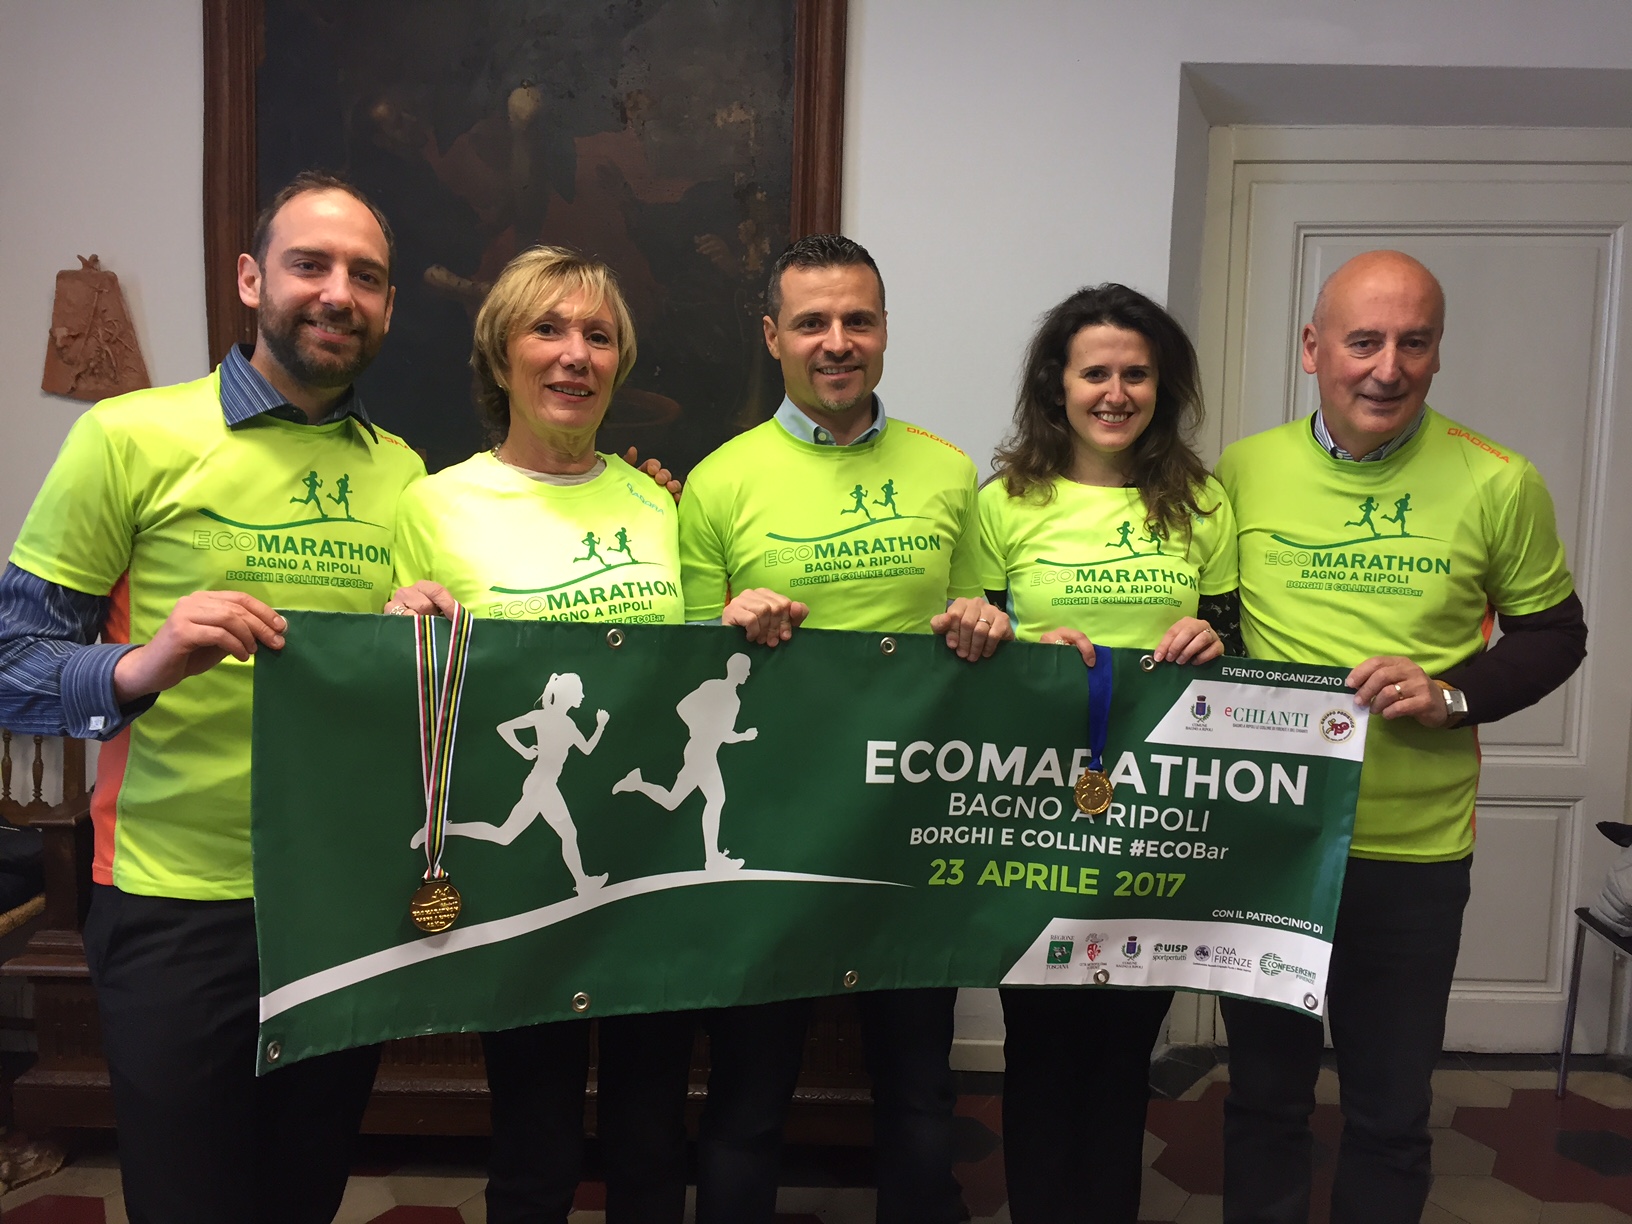 Ecomarathon, tutti di corsa alla scoperta del territorio